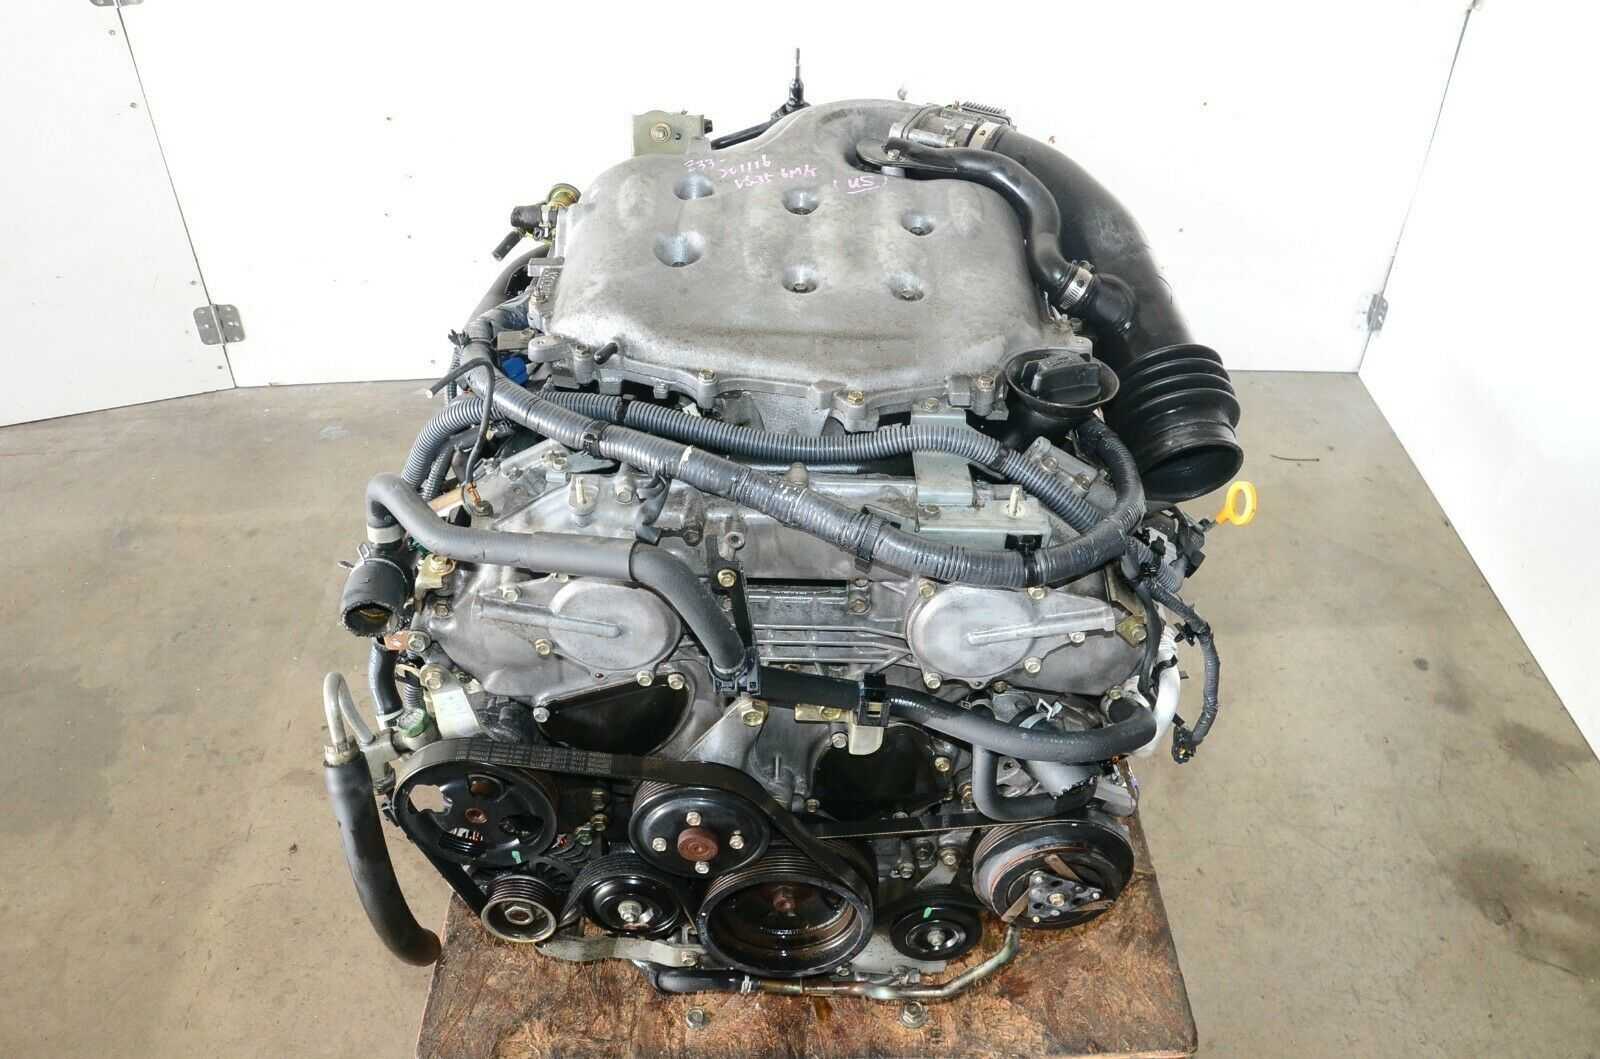 Двигатель chevrolet f14d3 проблемы характеристики и тюнинг